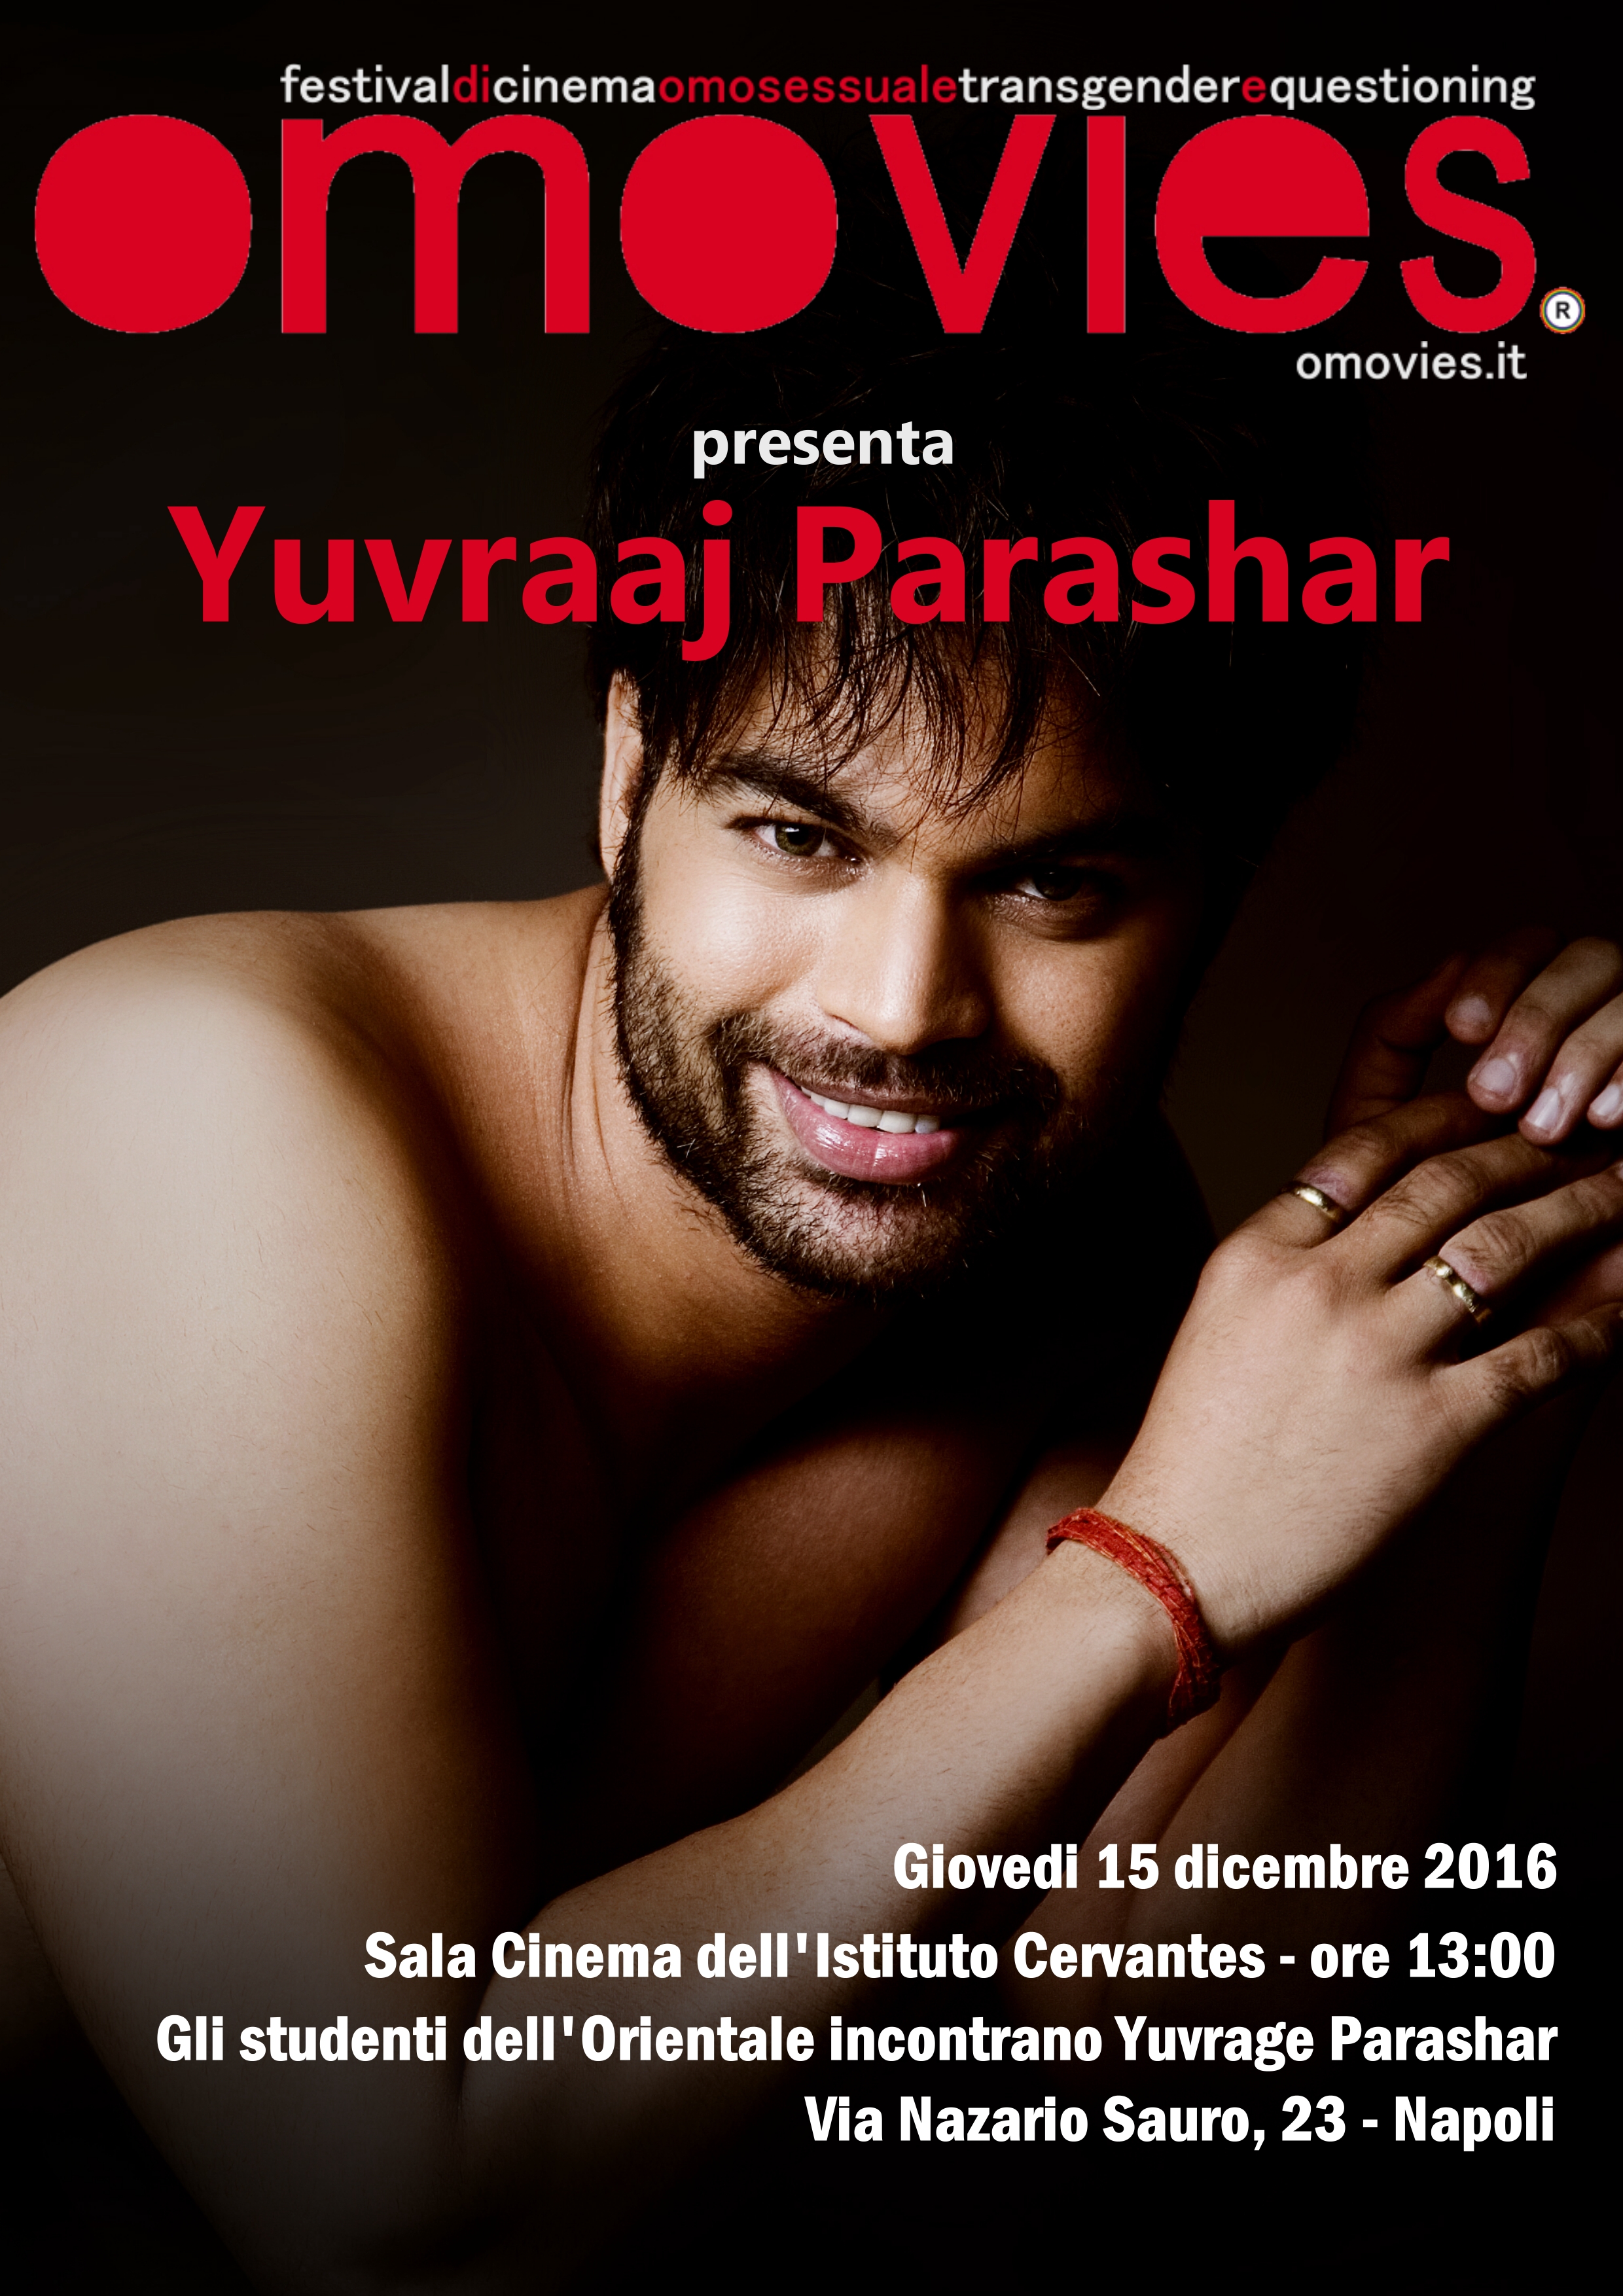 Yuvraaj Parashar| Ambika Kohli| Cover Dance| Song: Nashe si chad gayi